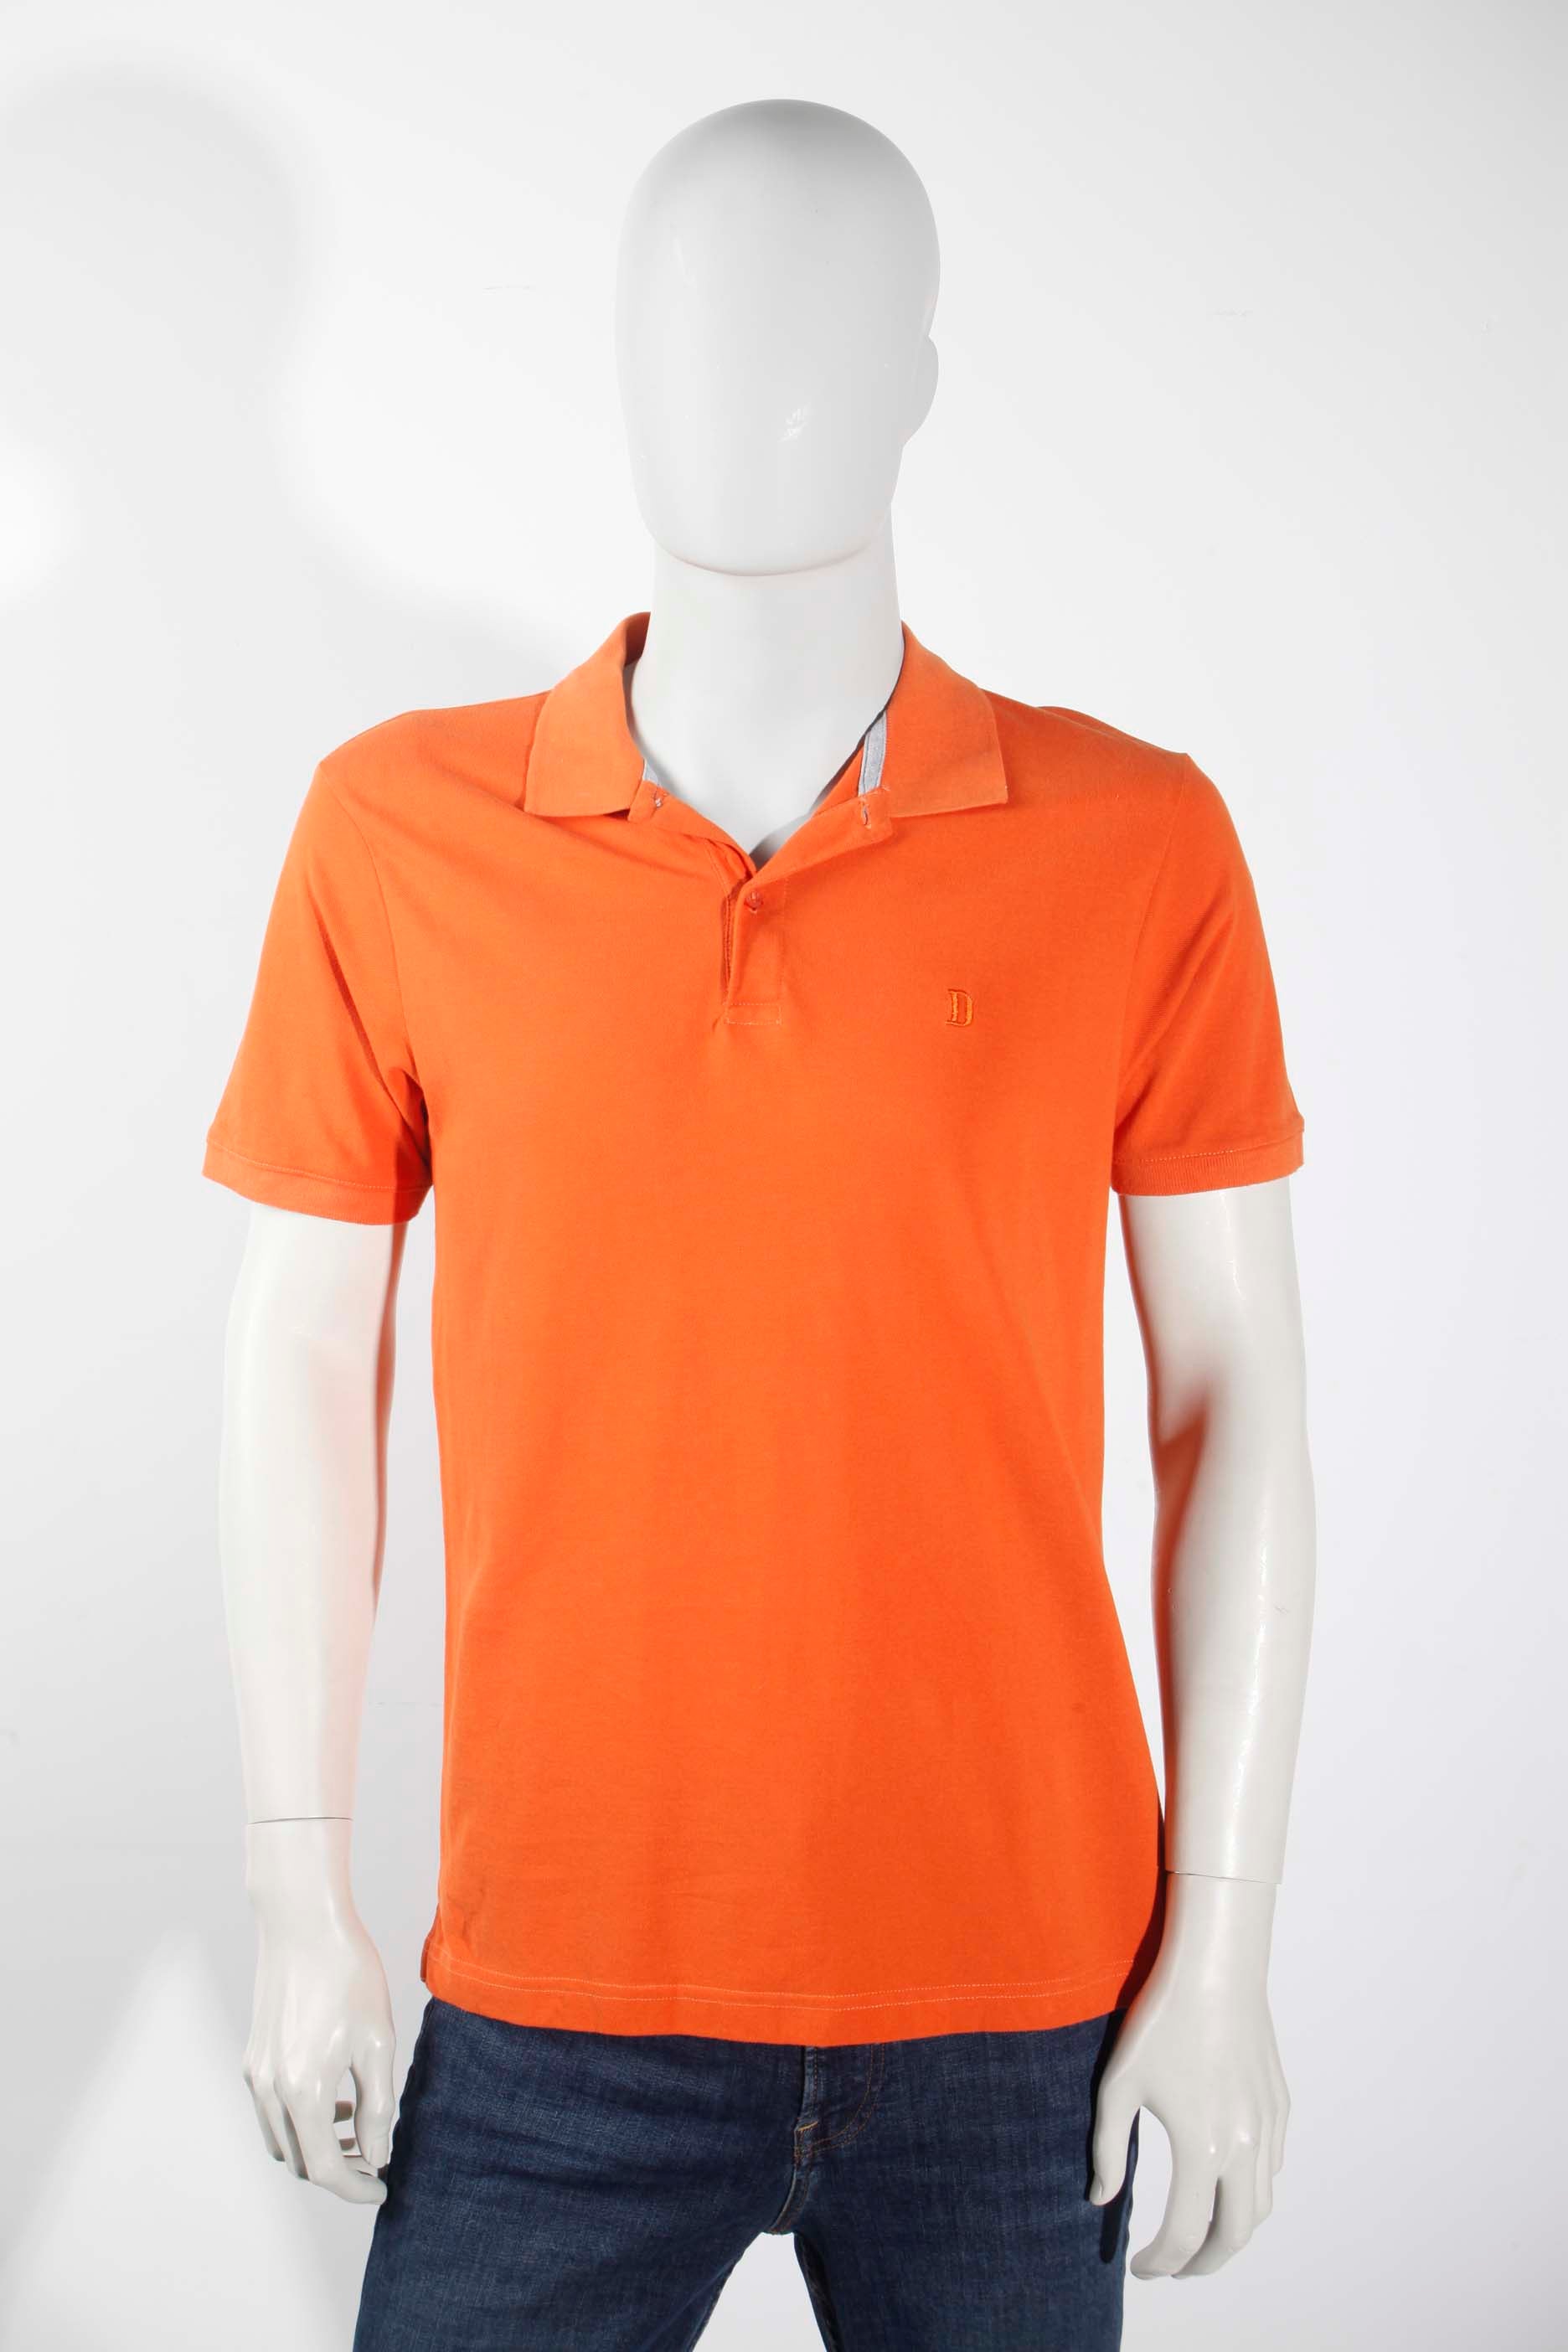 Mens Orange Polo Shirt (Large)